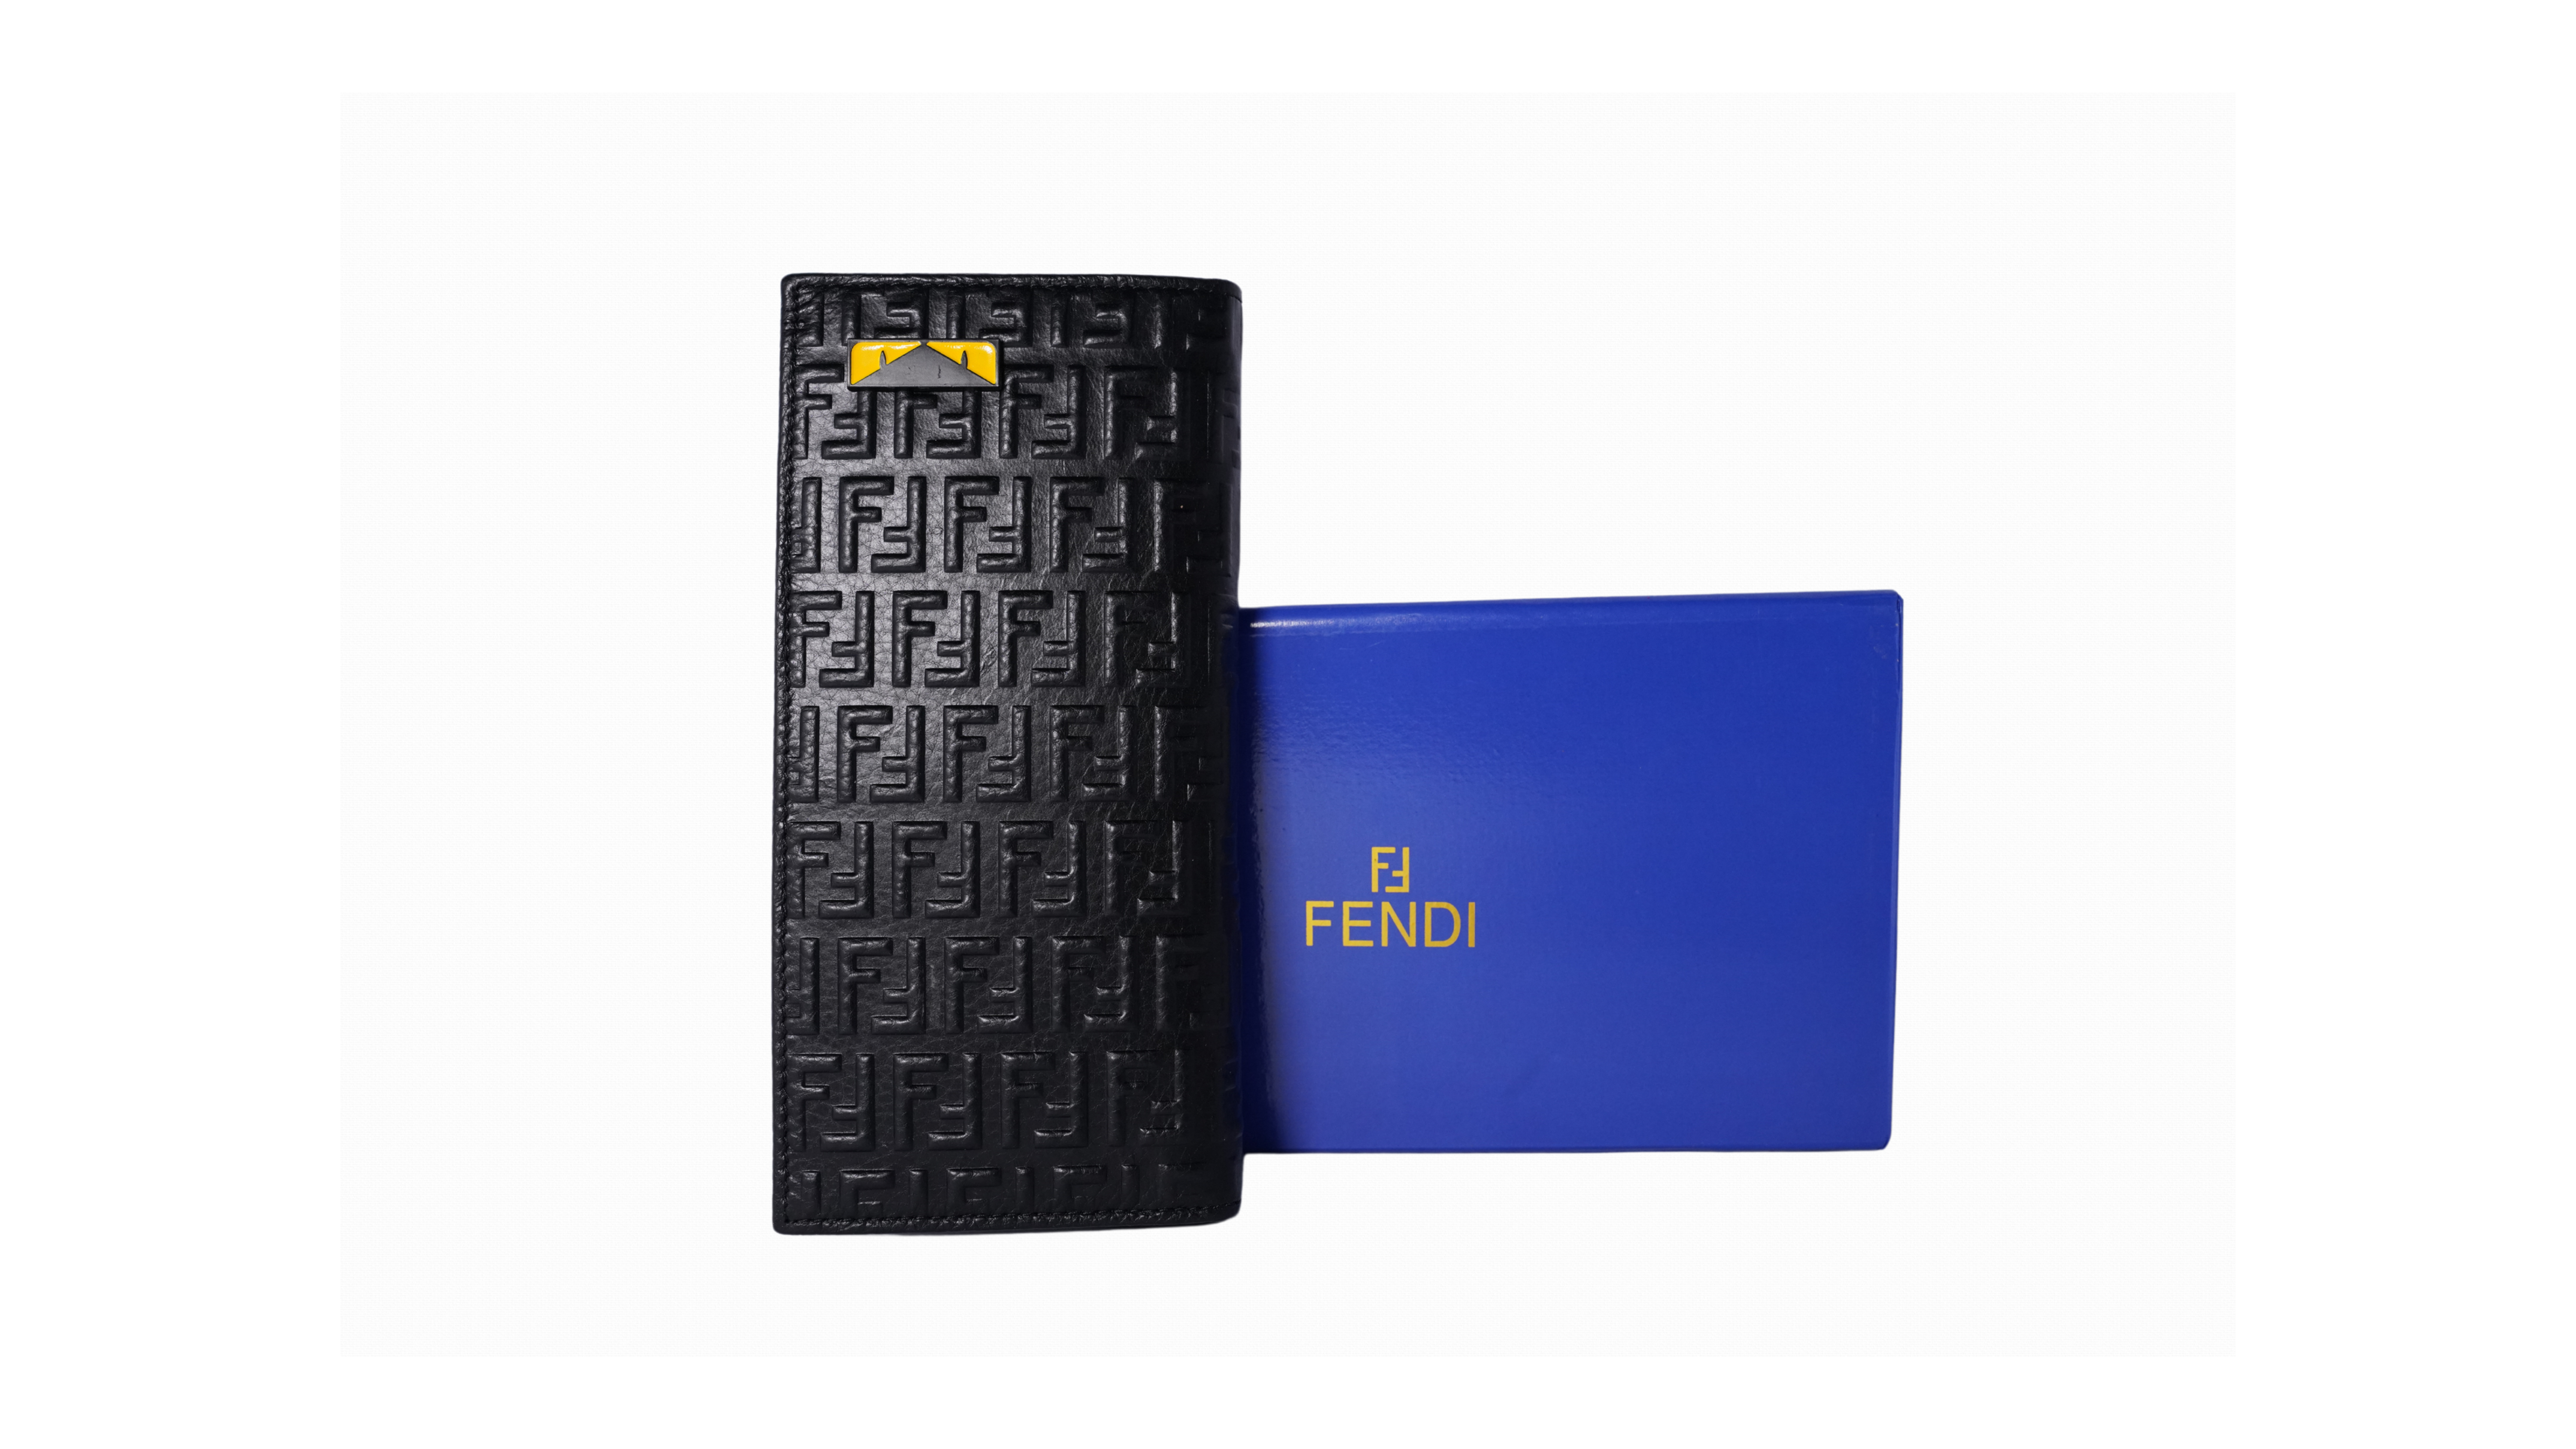 Fendi branded premium long wallet for men